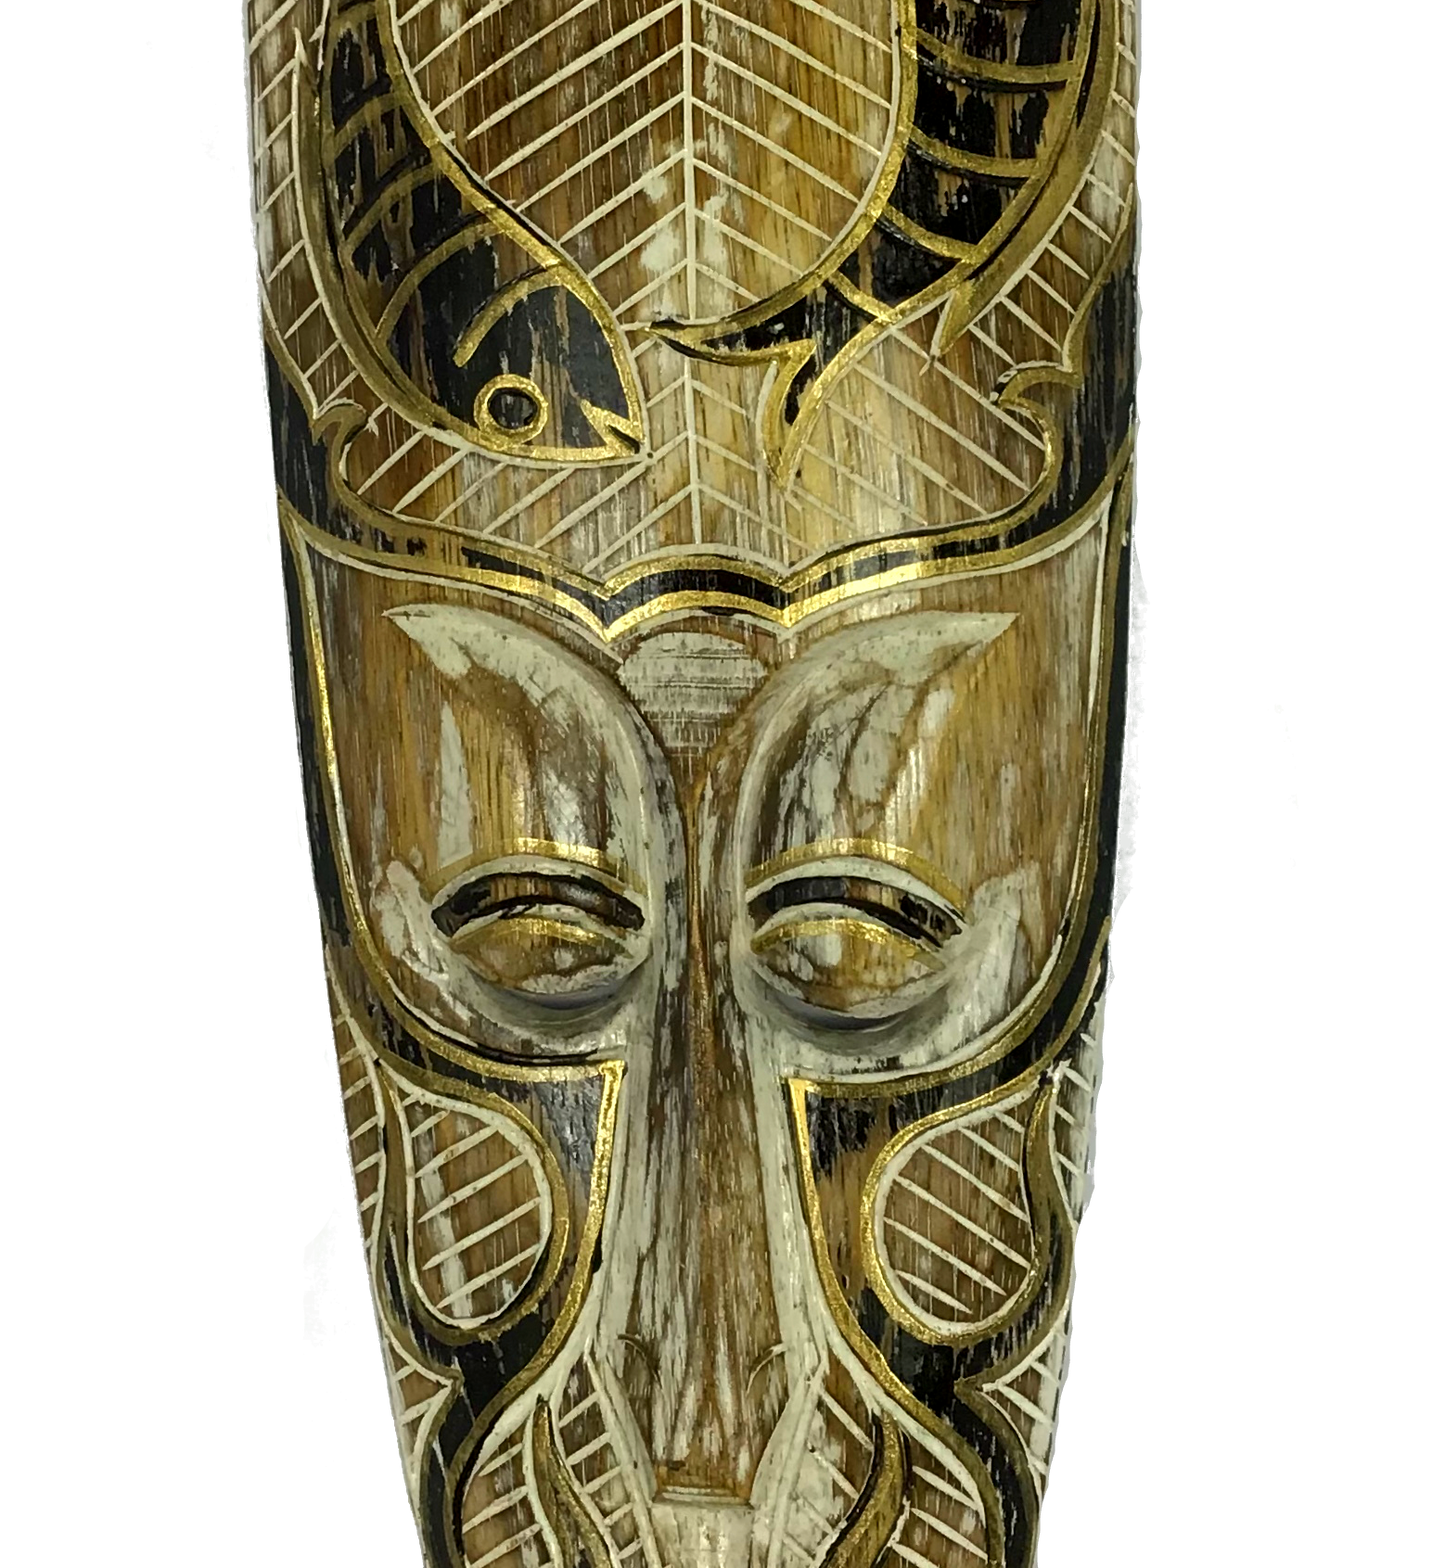 Máscara Carranca de Parede Peixe 50cm